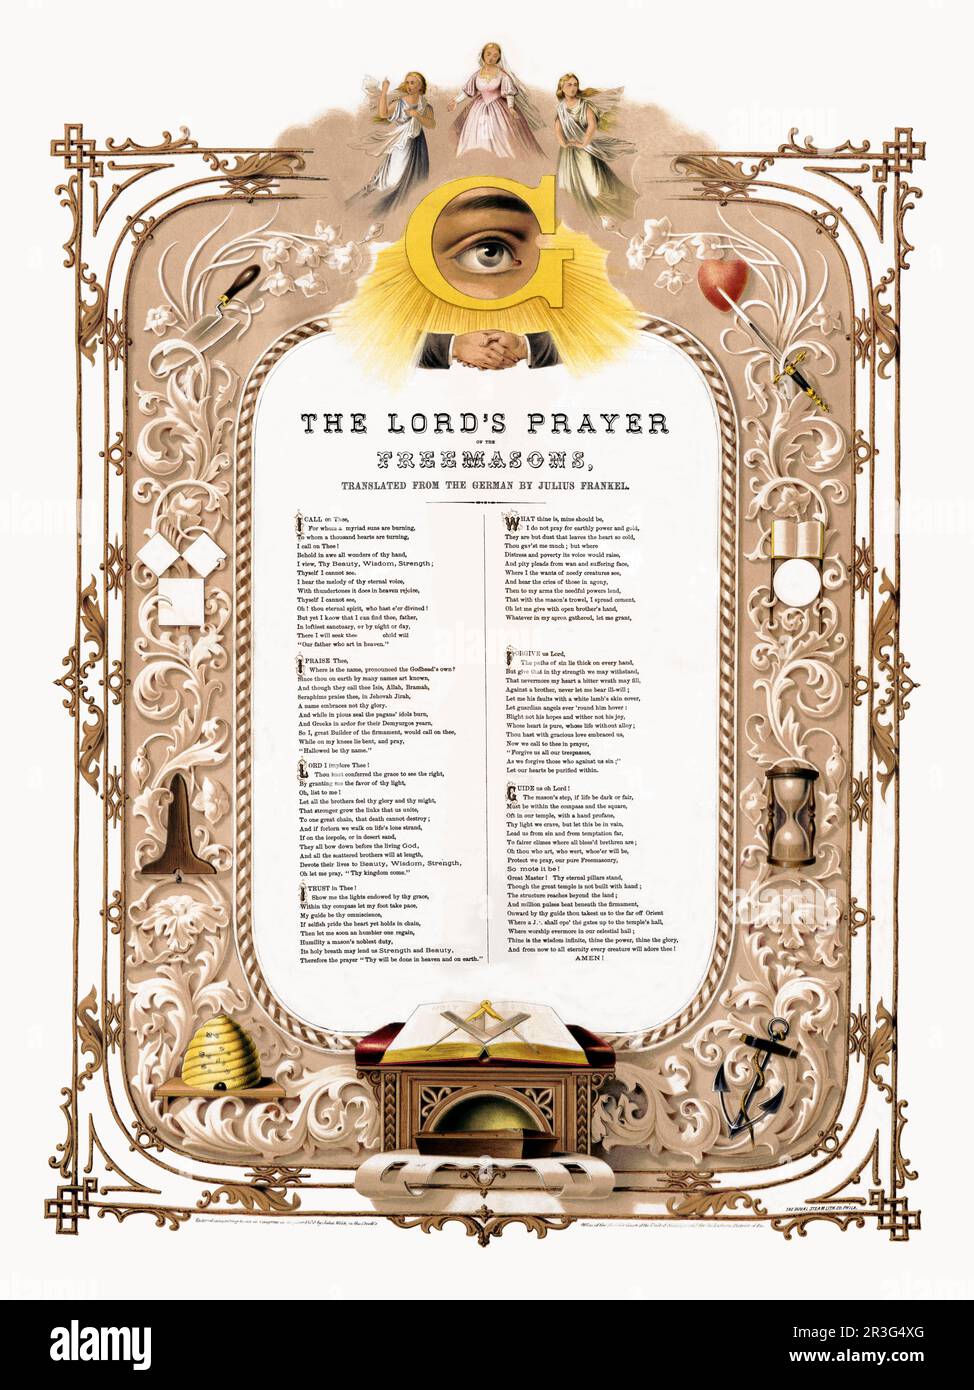 La prière du Seigneur des Freemasons, traduite de l'allemand par Julius Frankel. Banque D'Images